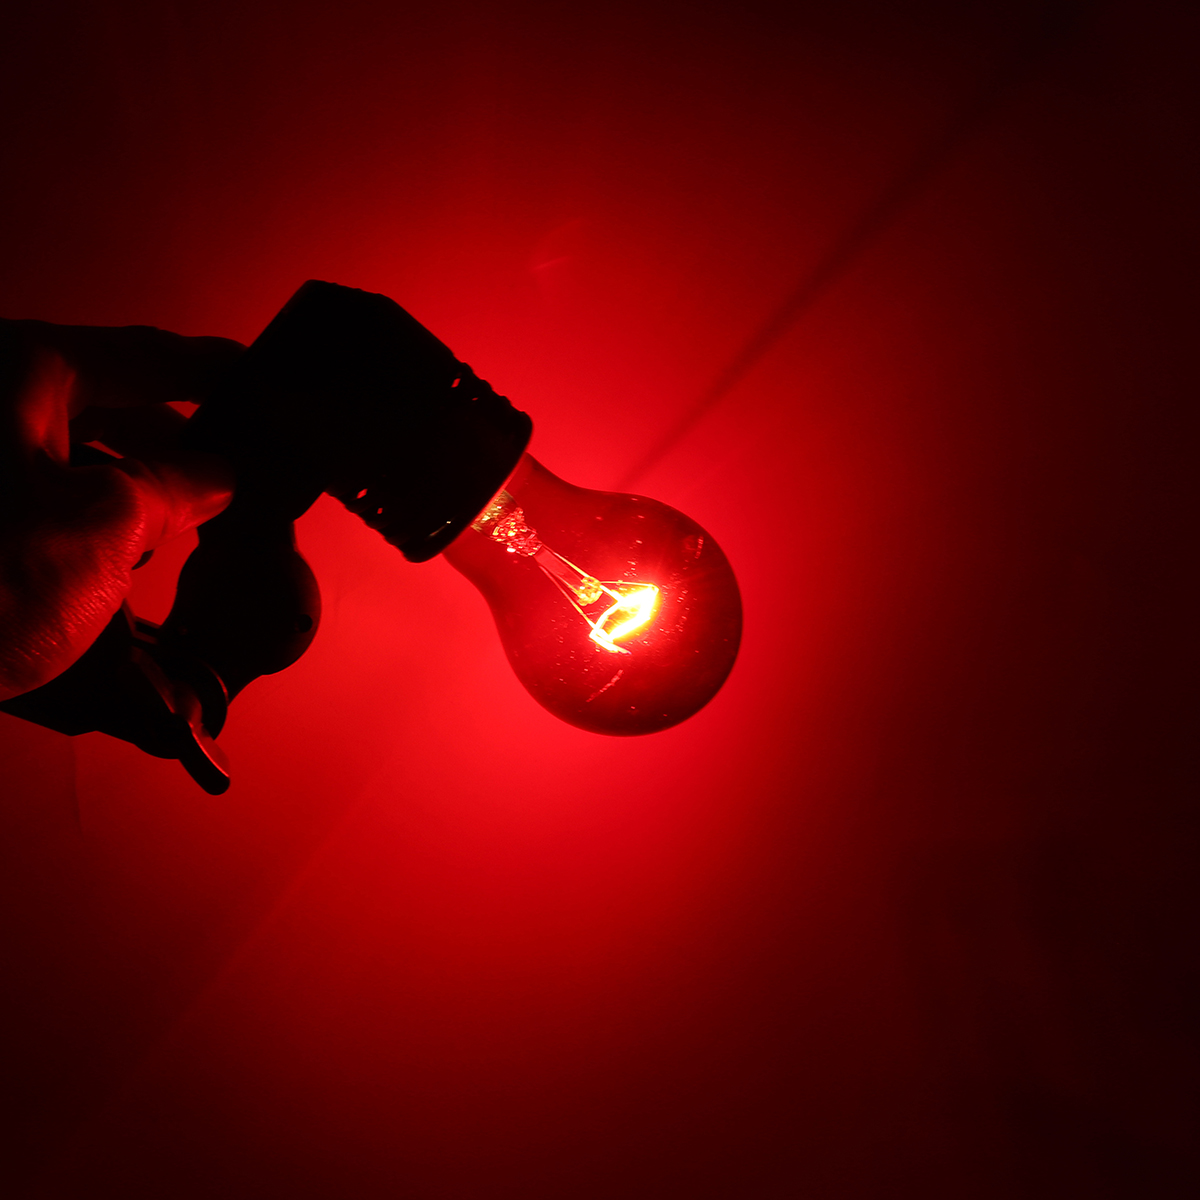 75W-Heat-Lamp-Heating-Infrared-Pet-Light-Bulb-for-Reptile-Tortoise-AC110V-1465081-8